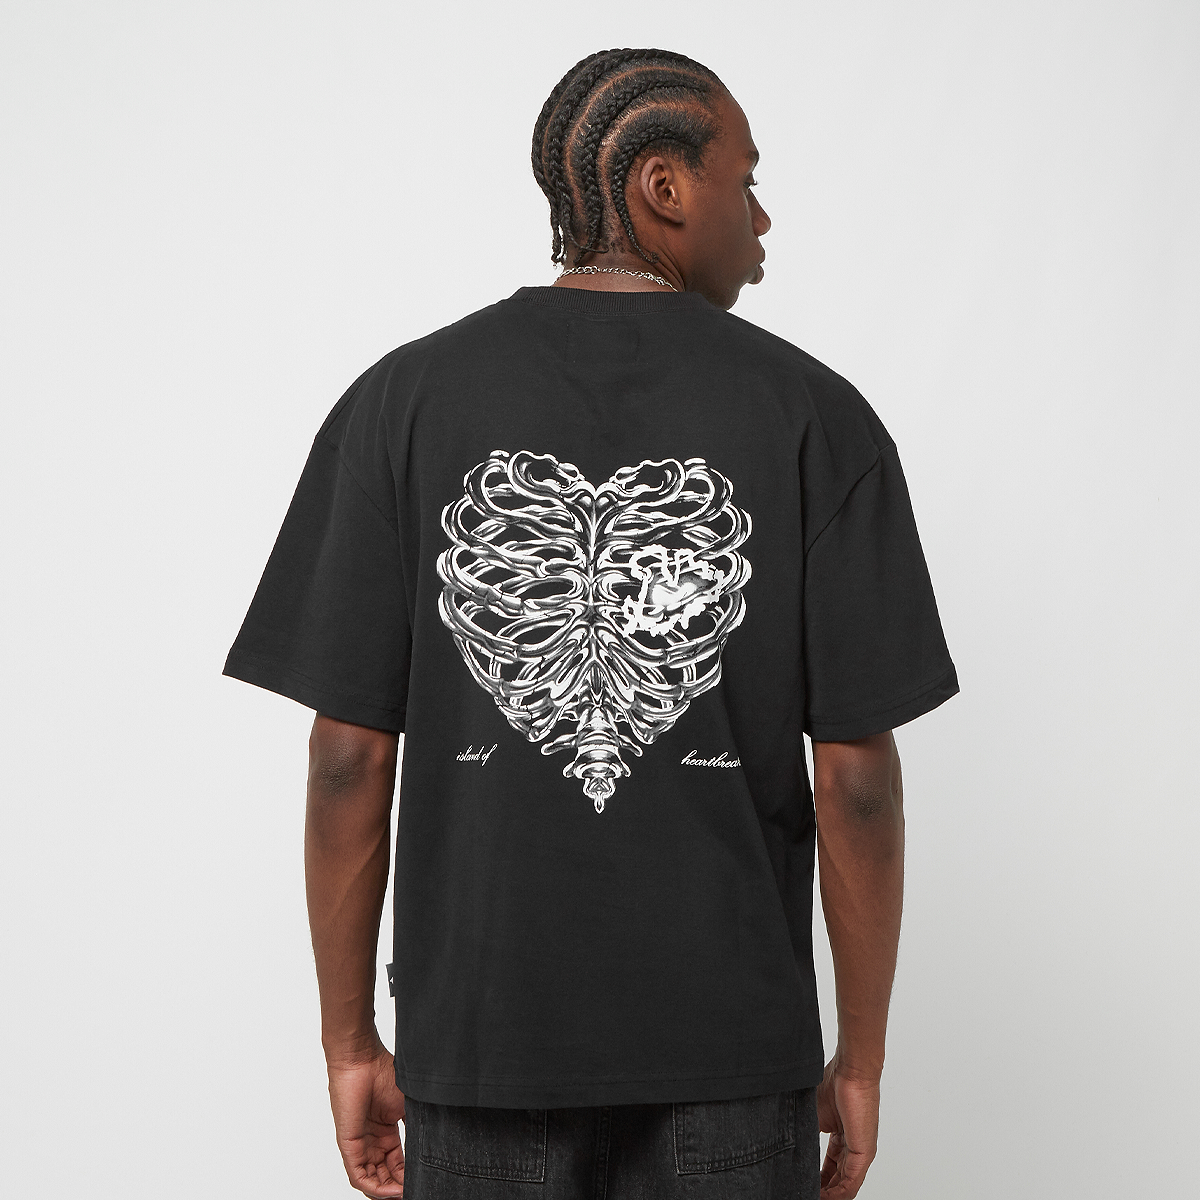 Pequs Island Of Heartbreaks Chrom T-shirt T-shirts Kleding Black maat: XL beschikbare maaten:XL S M